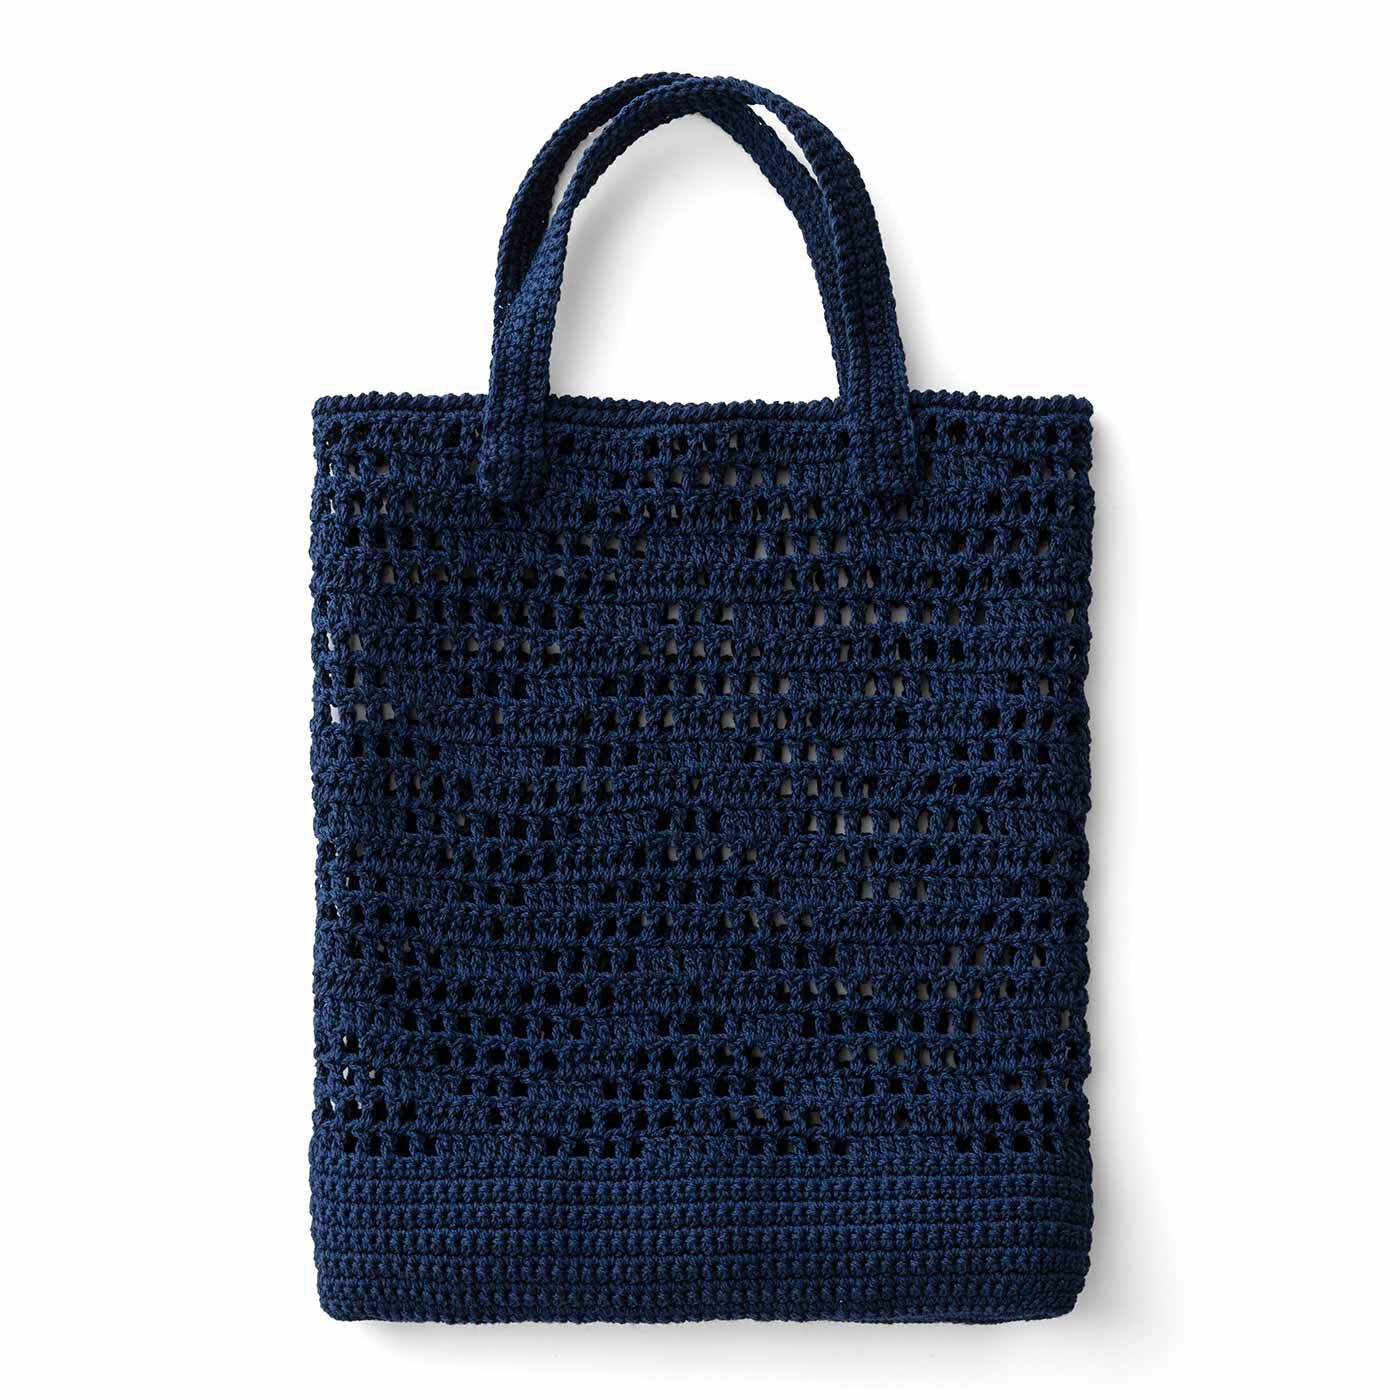 Real Stock|涼しげな編み地が自慢 透け感がおしゃれなかぎ針編みバッグ|1：ディープブルーの方眼編みバッグ